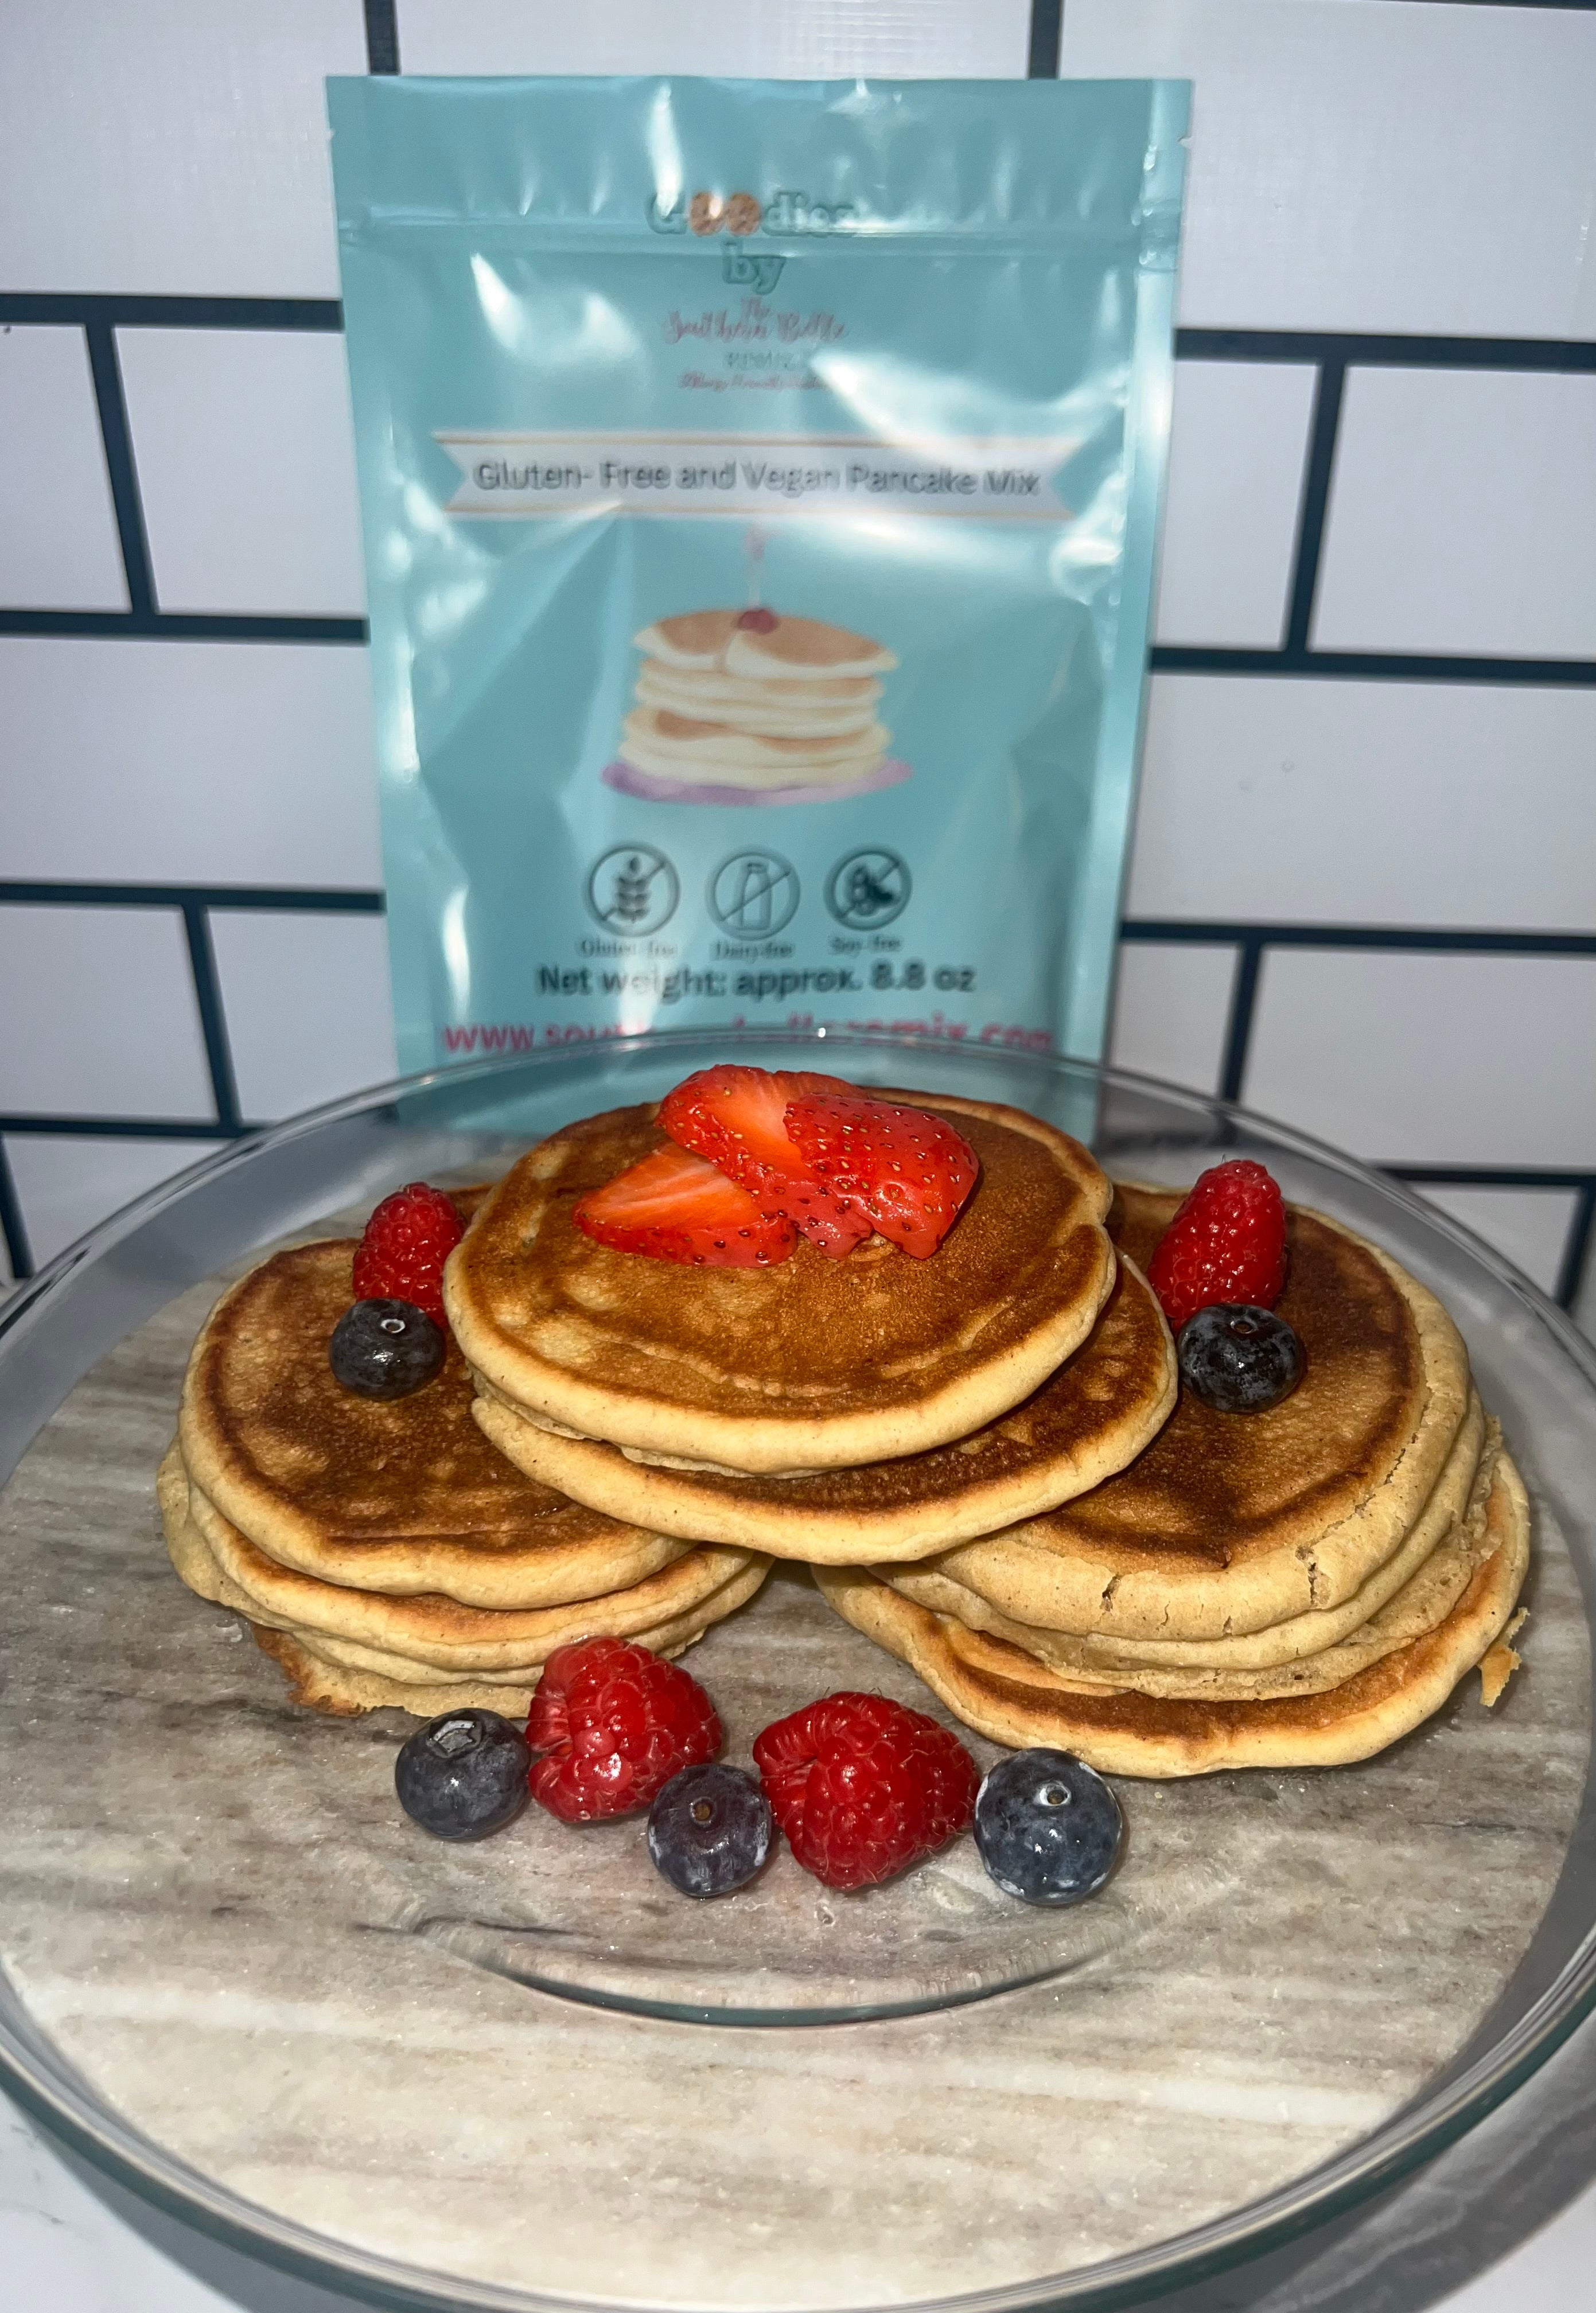 Gluten-Free and Vegan Pancake Mix